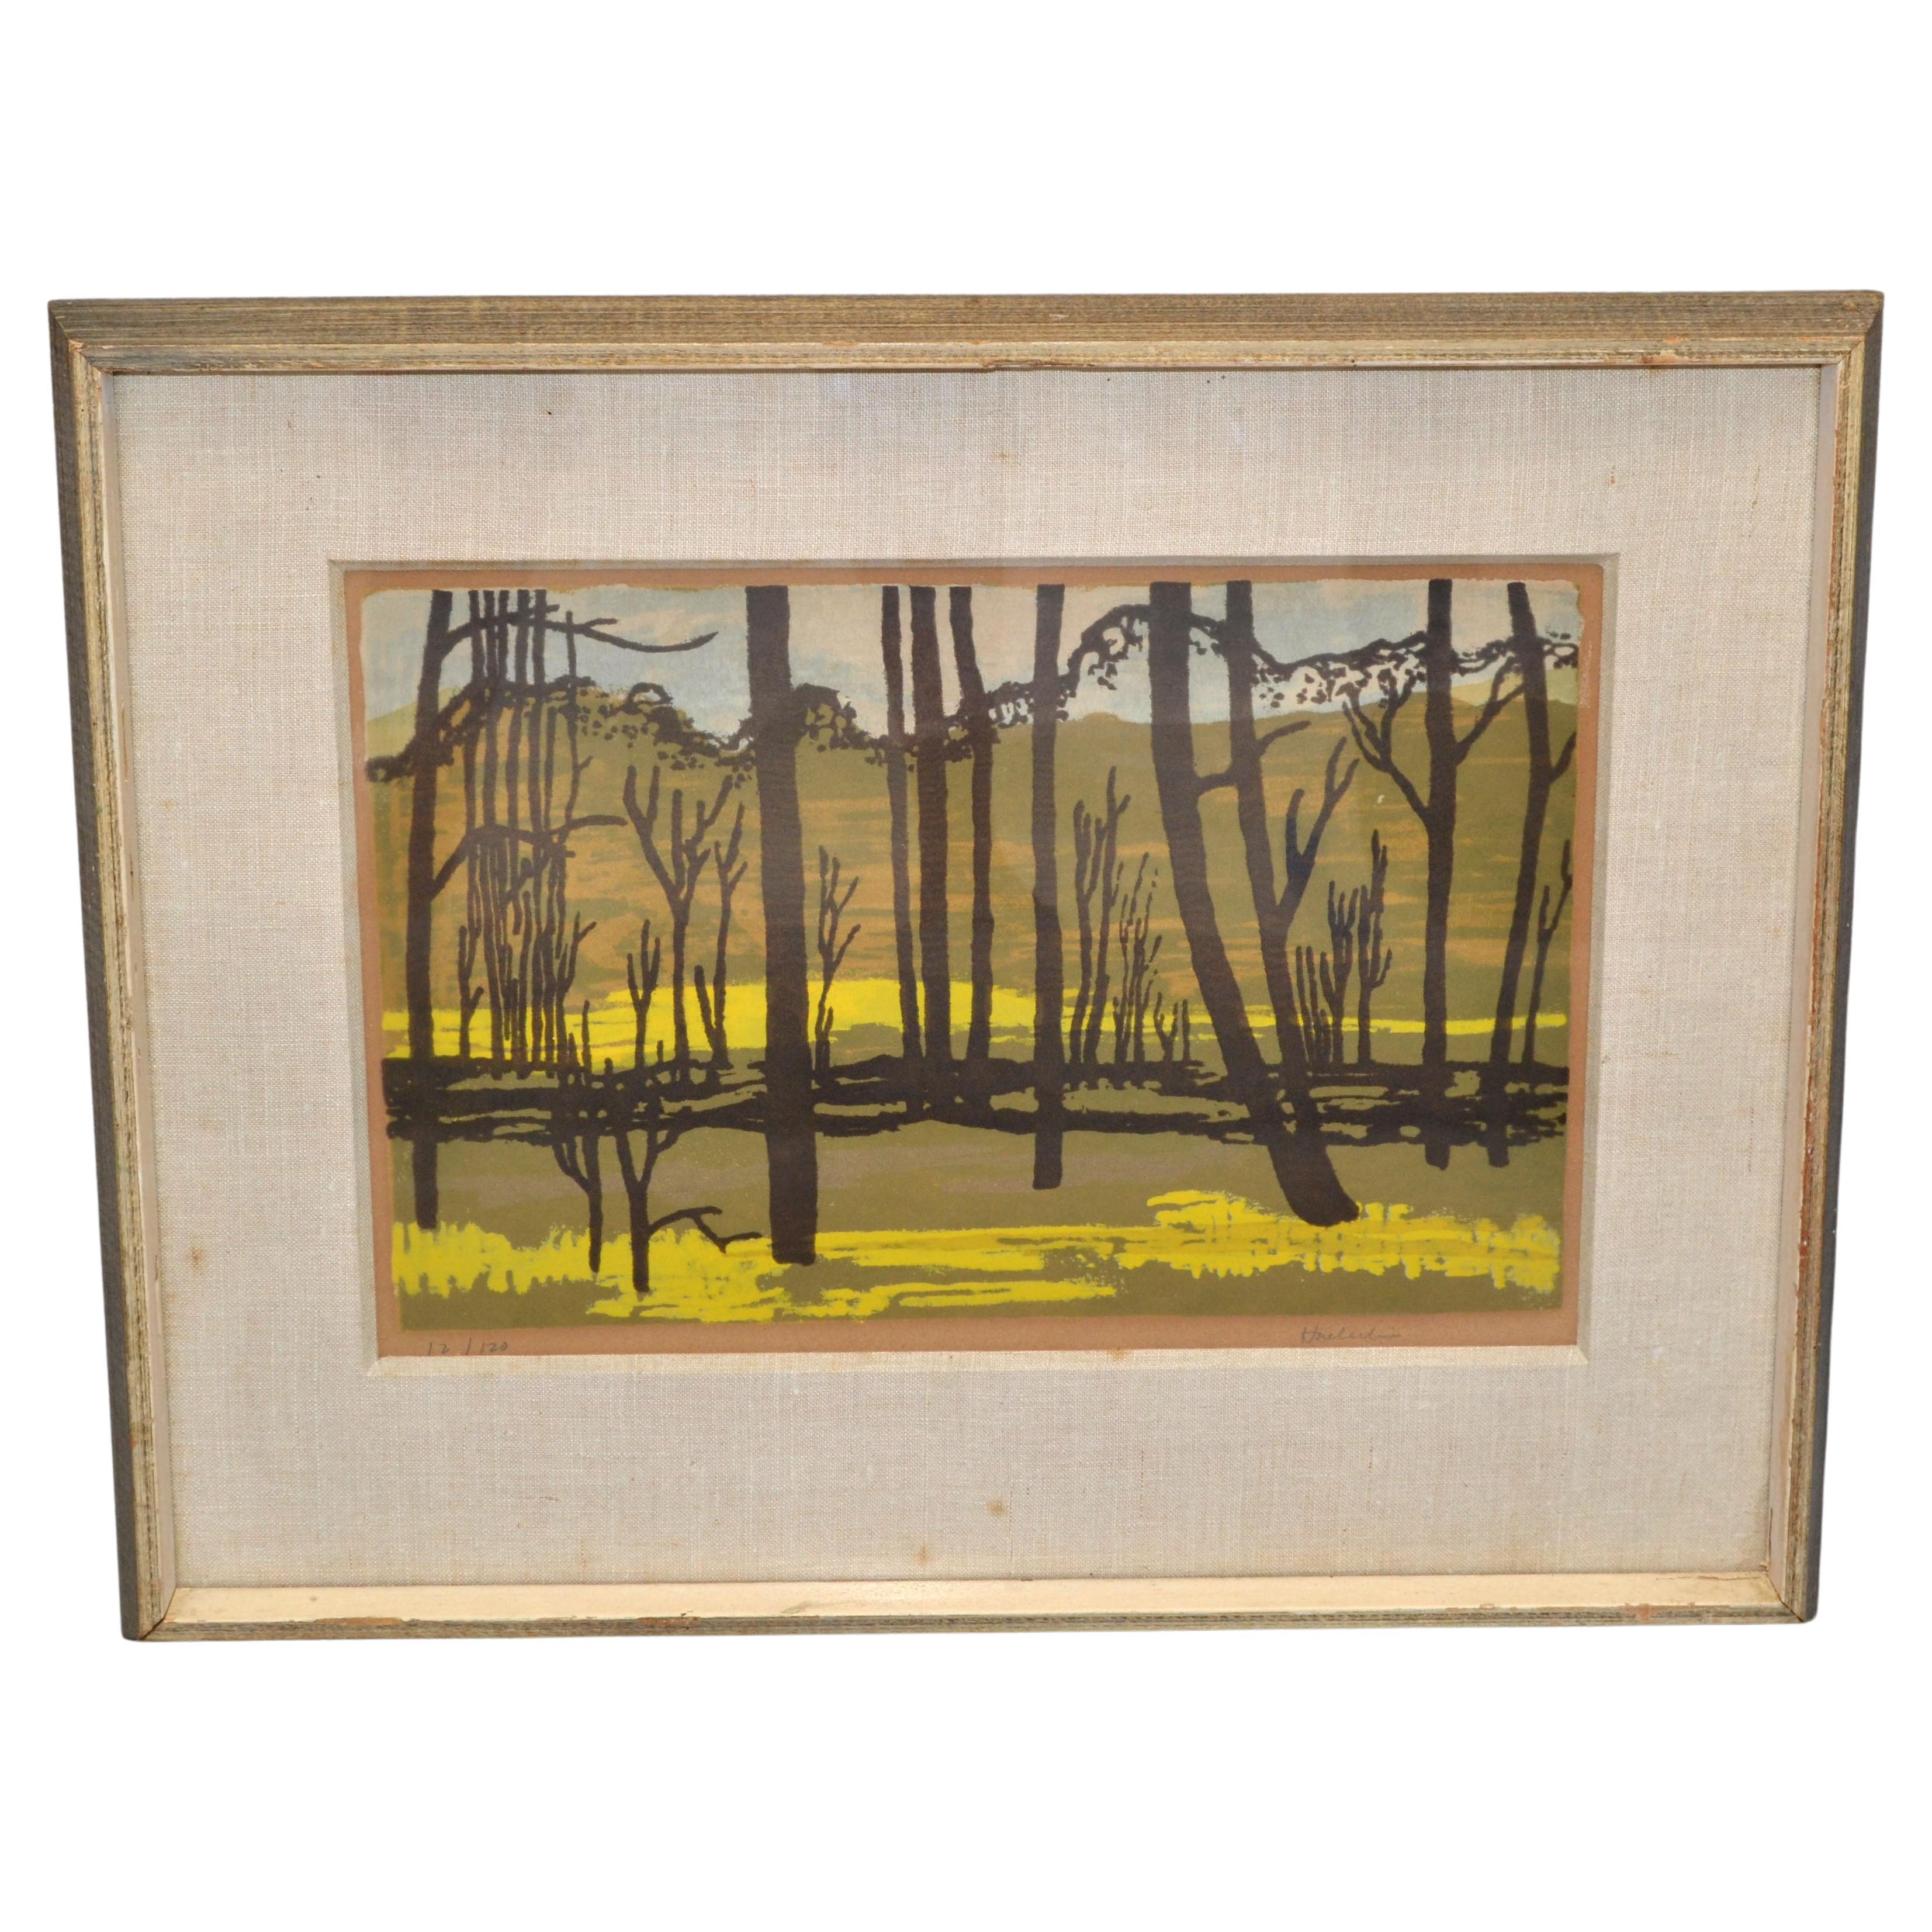 Peinture américaine vintage sur toile encadrée dorée représentant une scène de paysage signée Huerlin